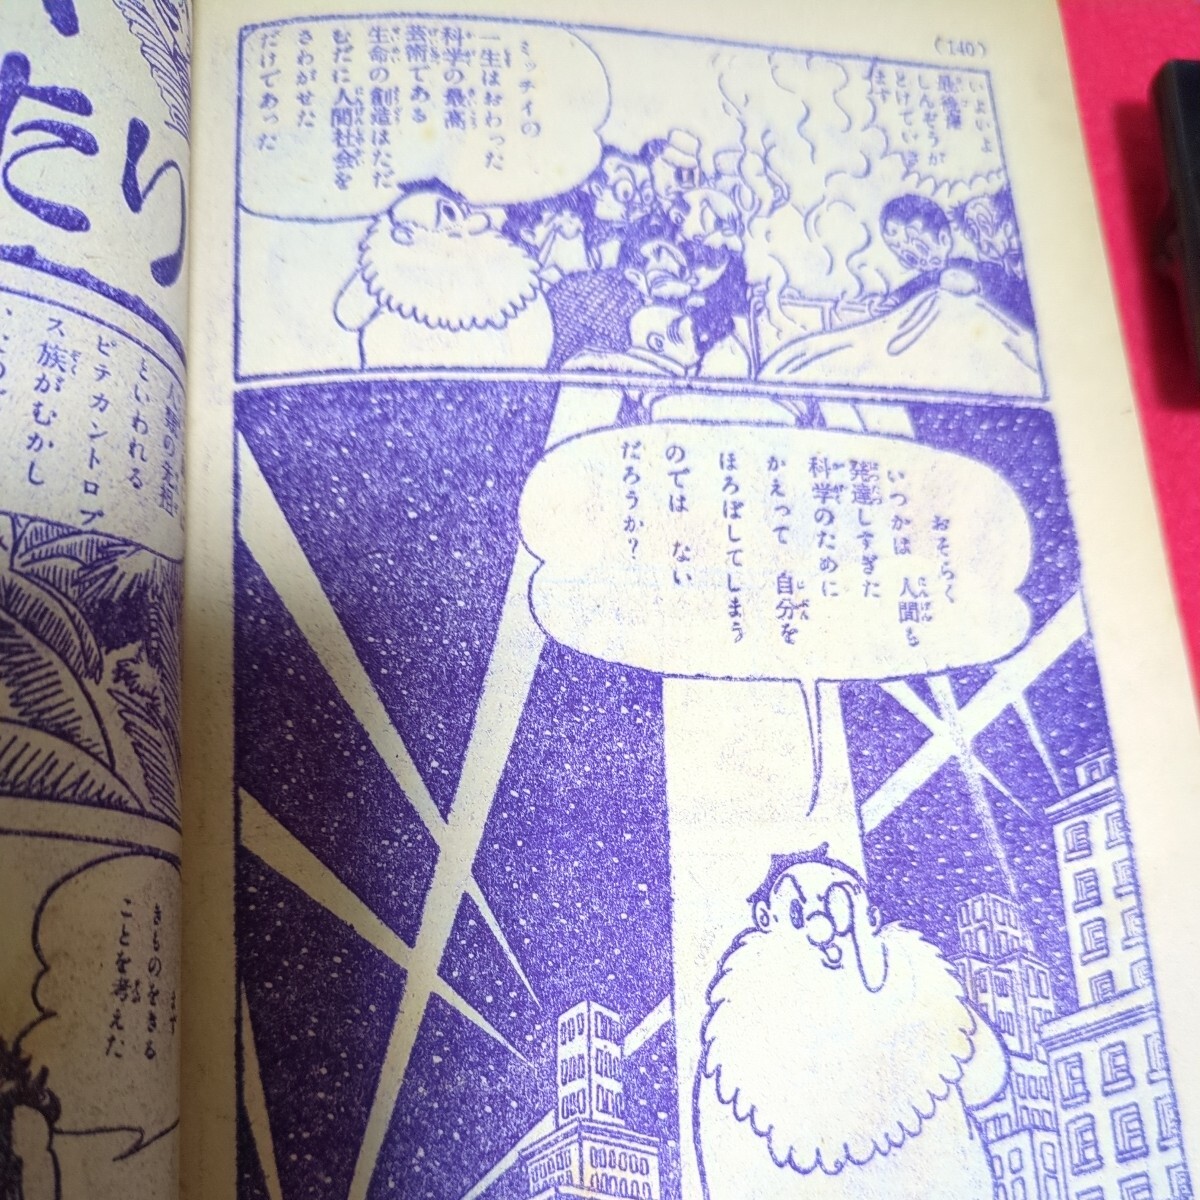  редкость рука .. насекомое . произведение ... сборник Showa 31 год подросток Club новый год номер ...me Toro Police .... было использовано .... небо . маленький . короткий сборник manga (манга) подлинная вещь 